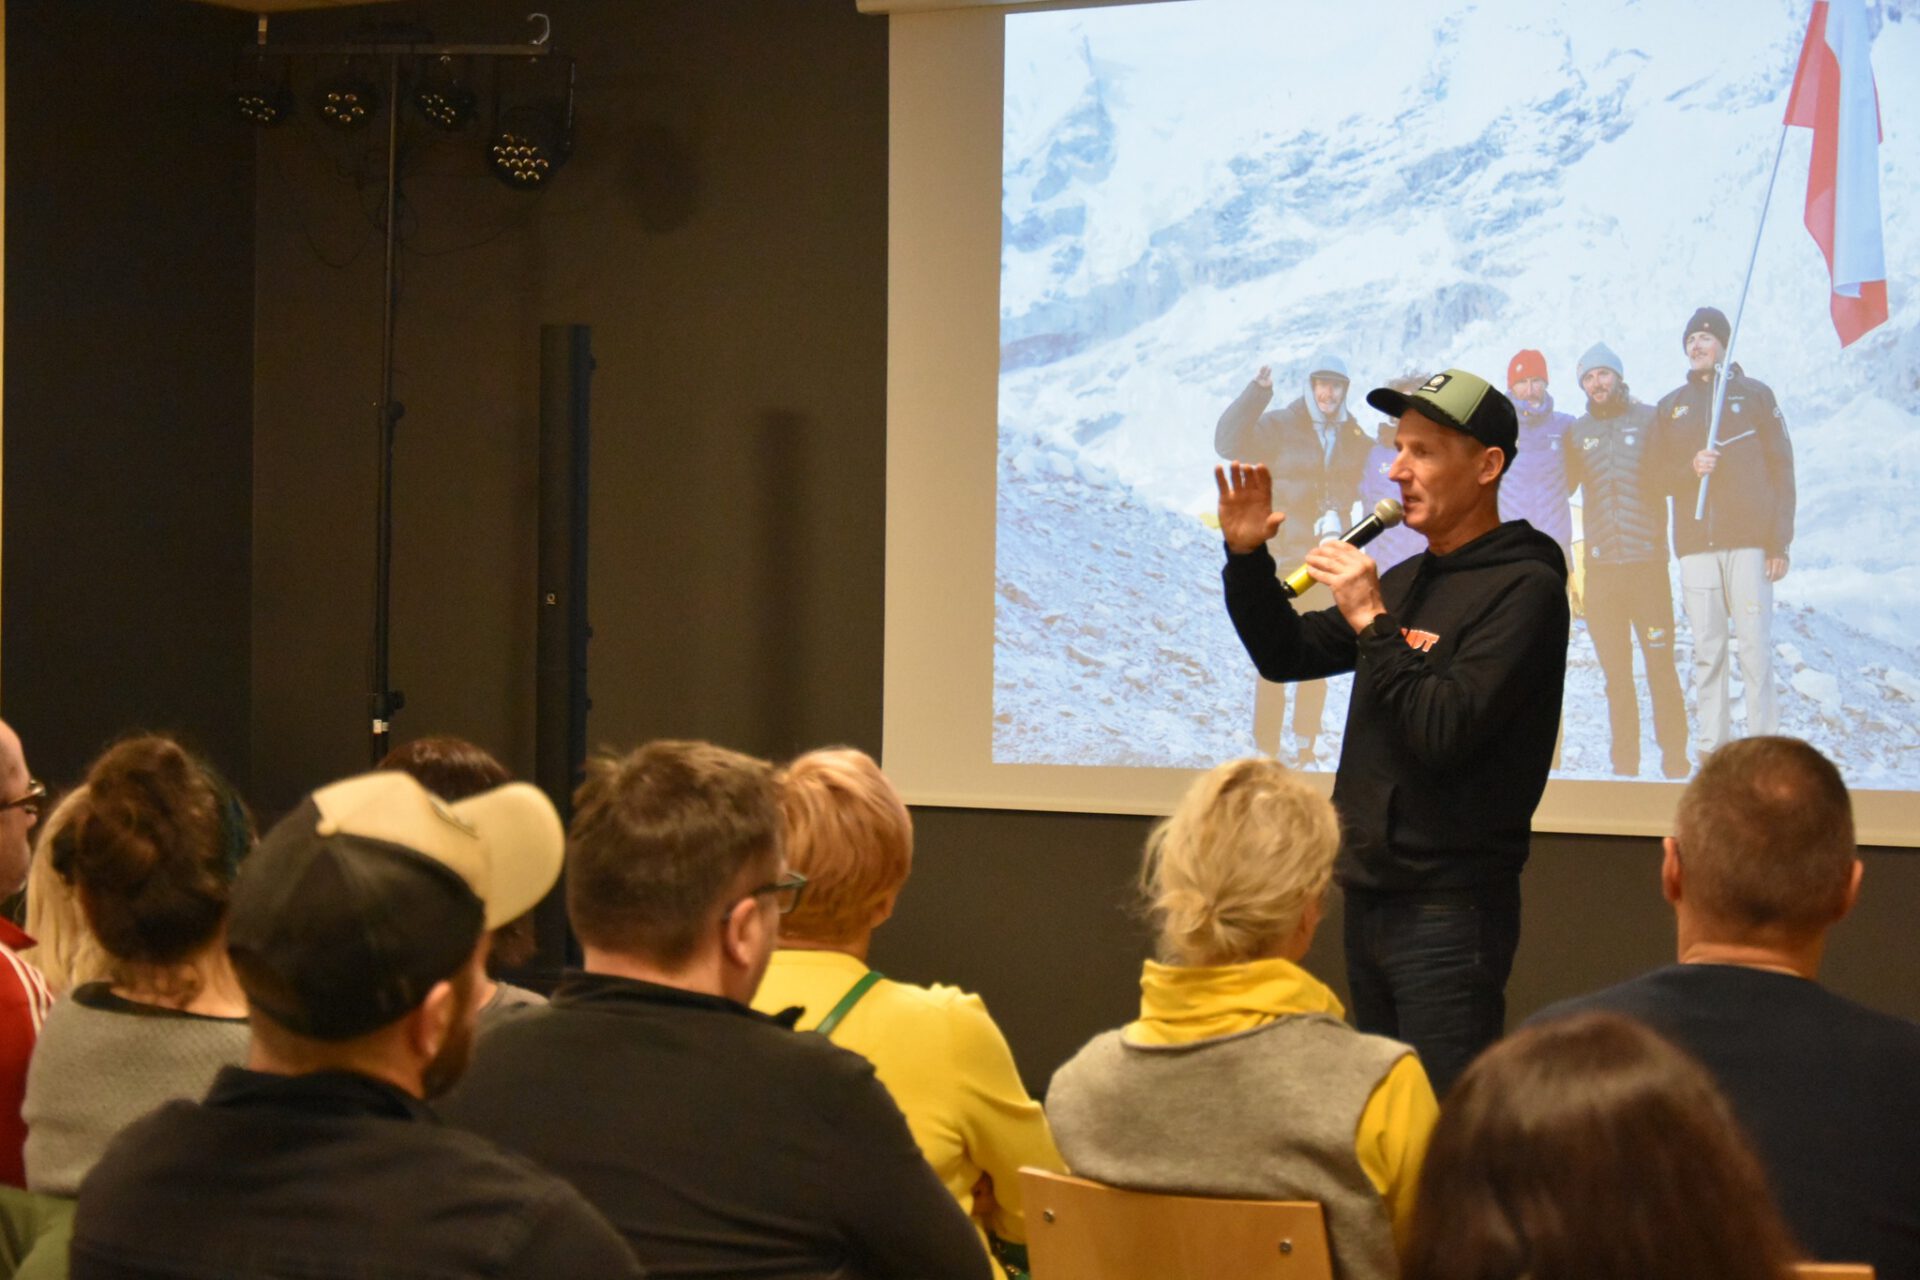 Na zdj Janusz Gołąb na tle slajdu z Himalaj ów , na którym widoczna jest ekipa Everest SKi i Polska flaga